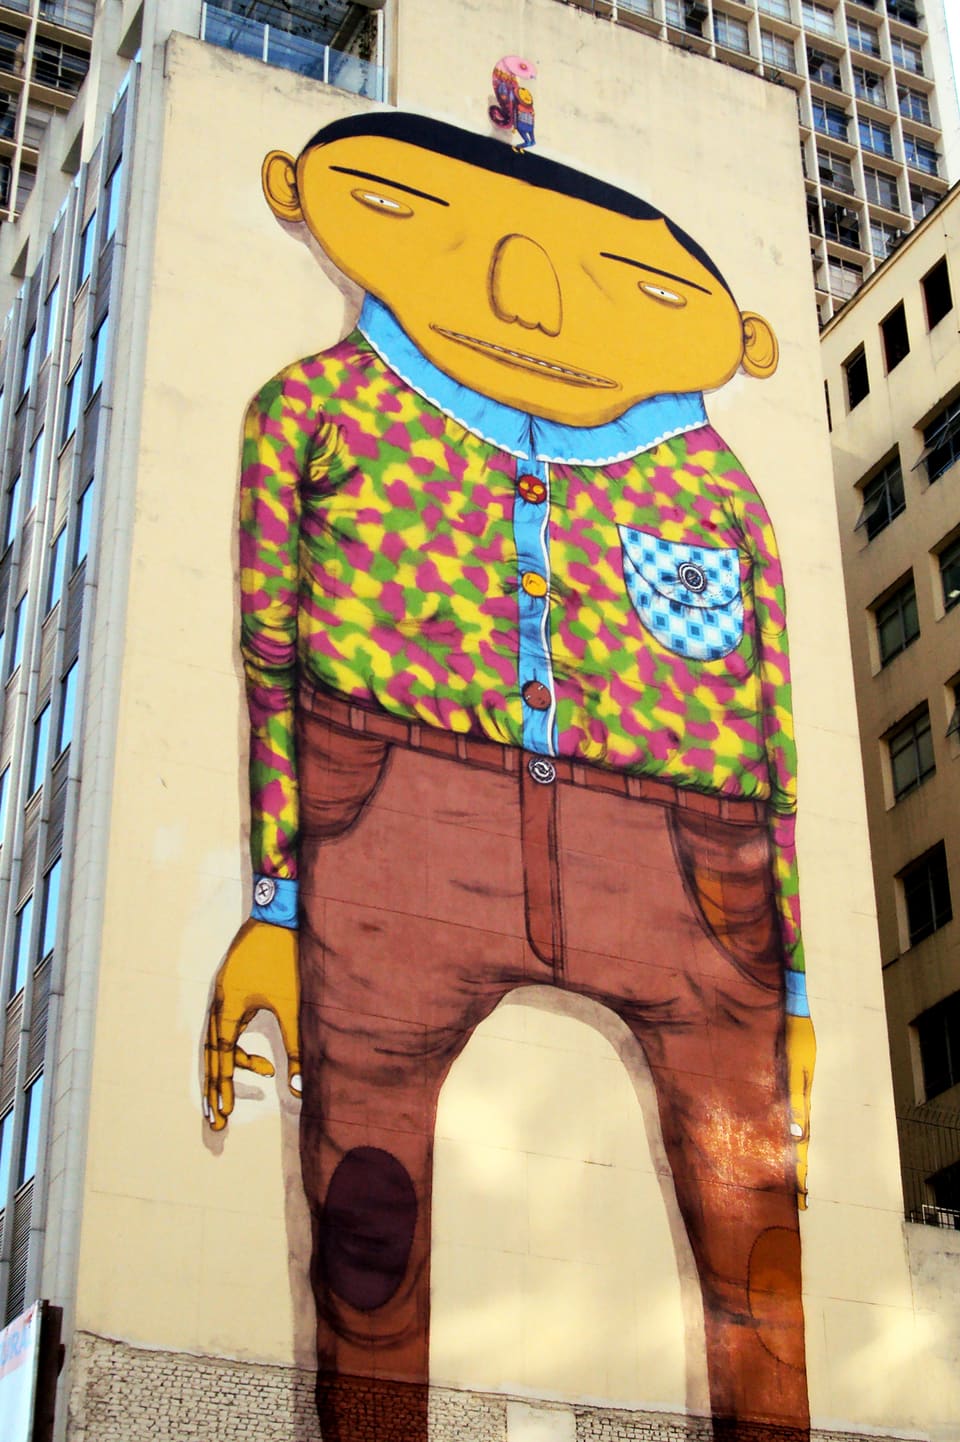 Wandbild: Ein Mann mit grossem, breitem Kopf, langezogenen Augenbrauen, Hemd und Hose.